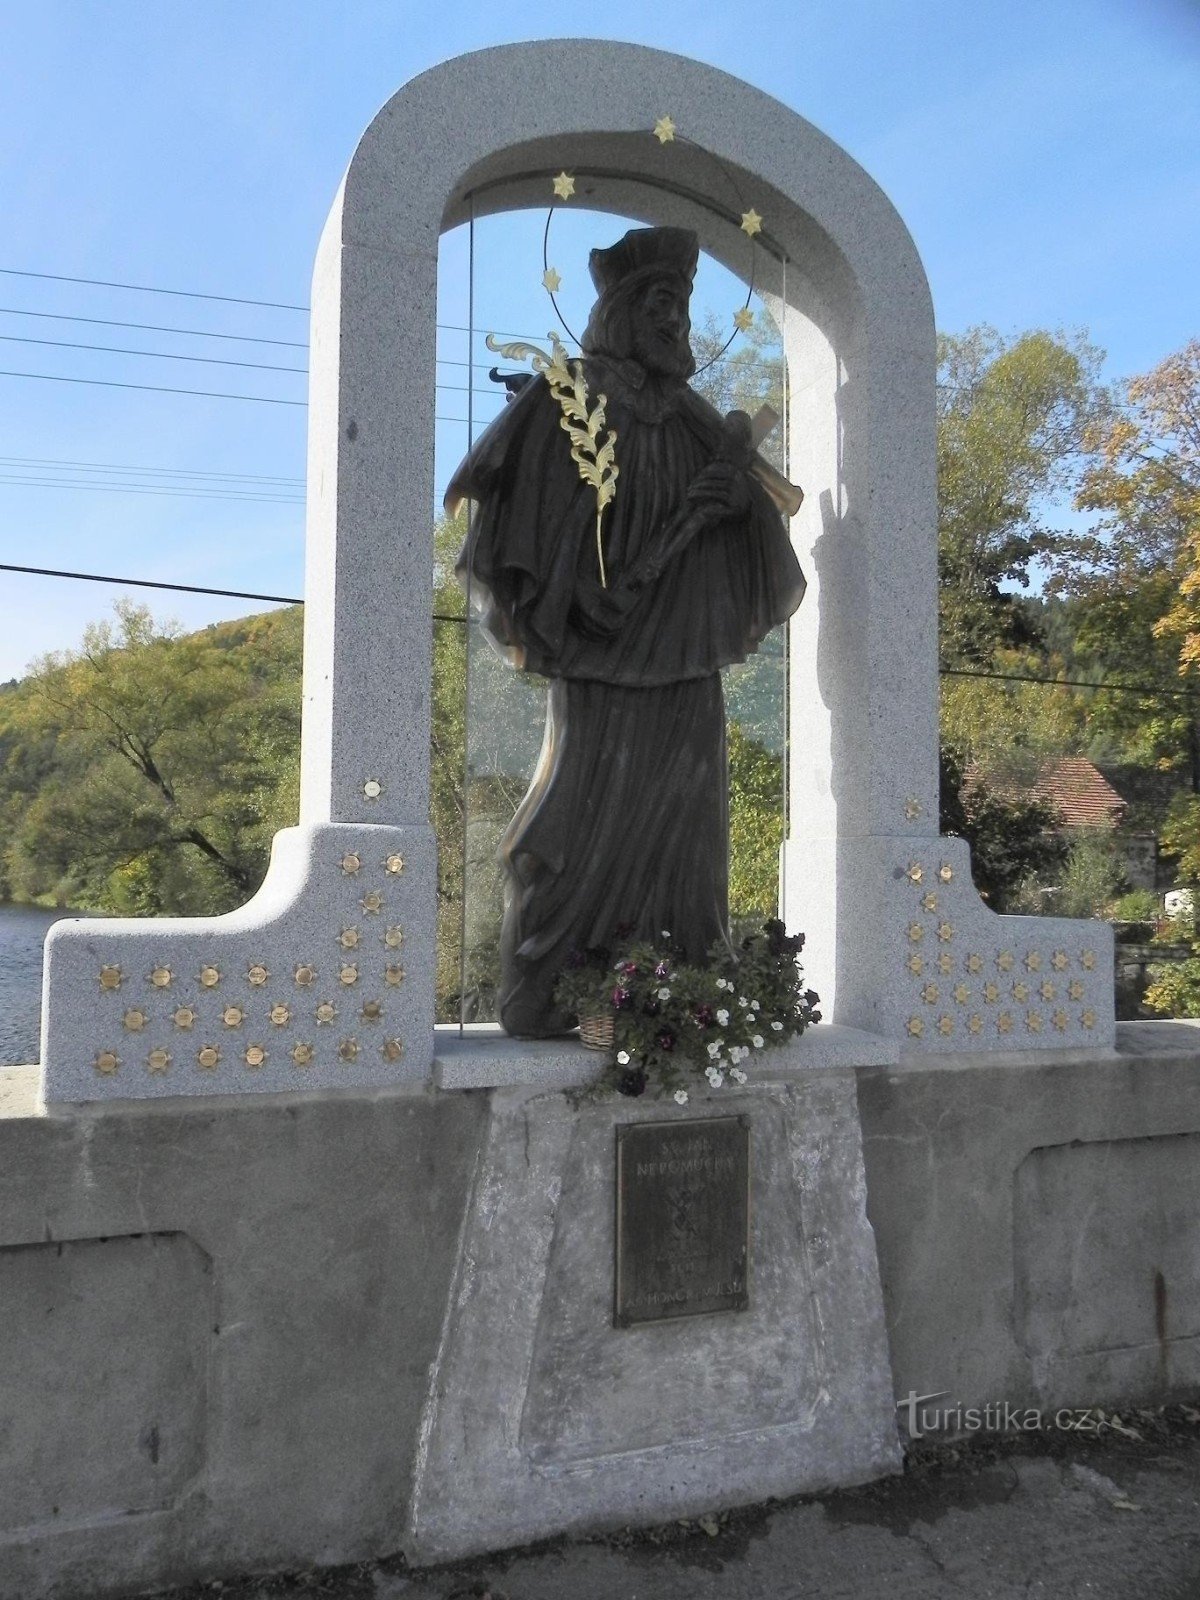 Mũ lưỡi trai, tượng thủy tinh của St. John of Nepomuk trên cây cầu